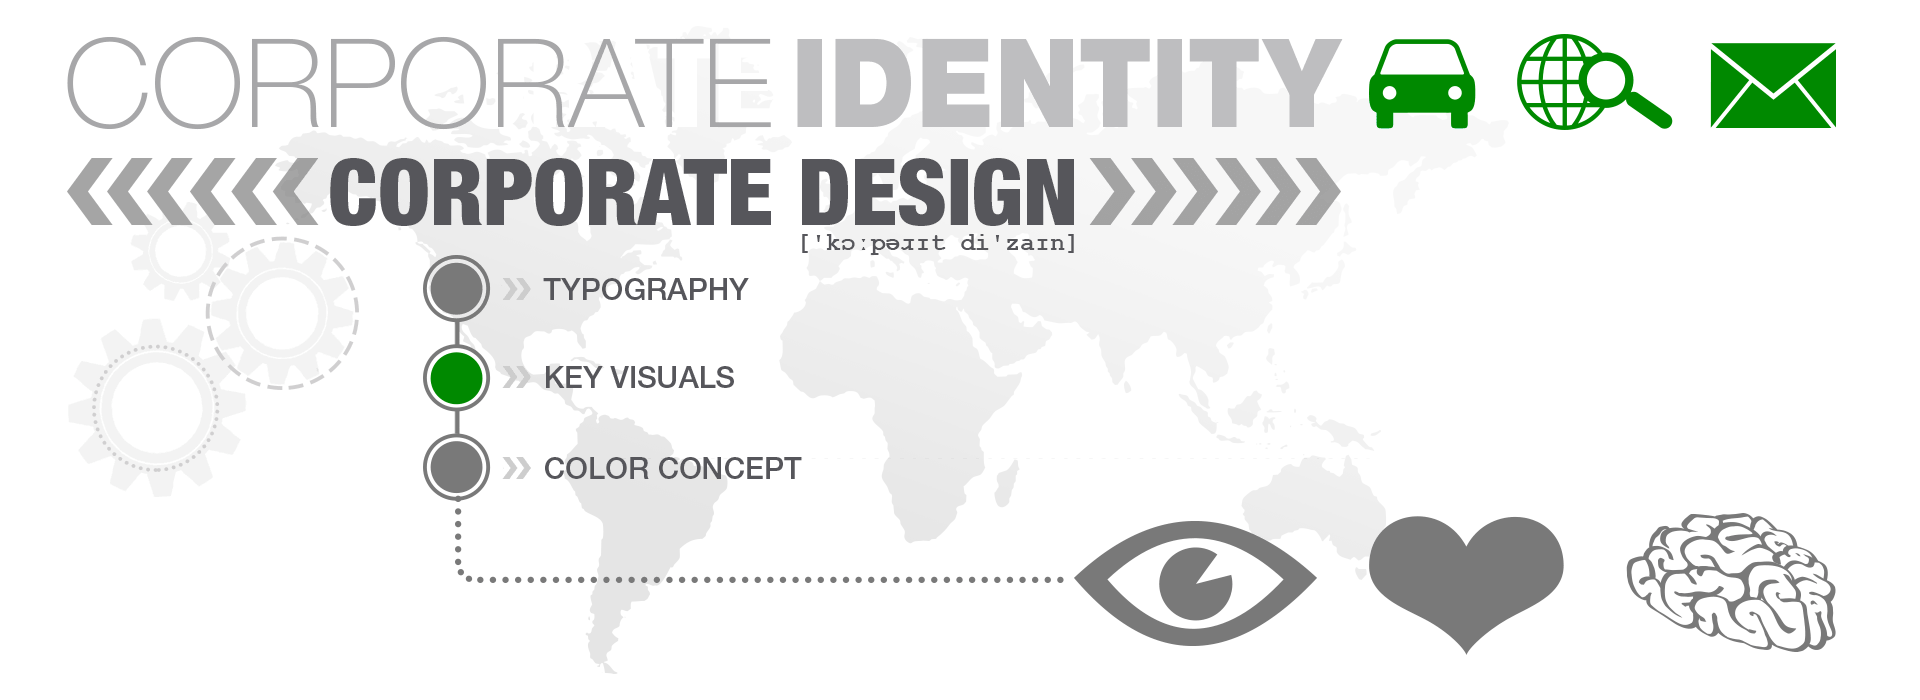 Unsere Referenzen im Bereich Corporate Design unter Wahrung der Corporate Identity